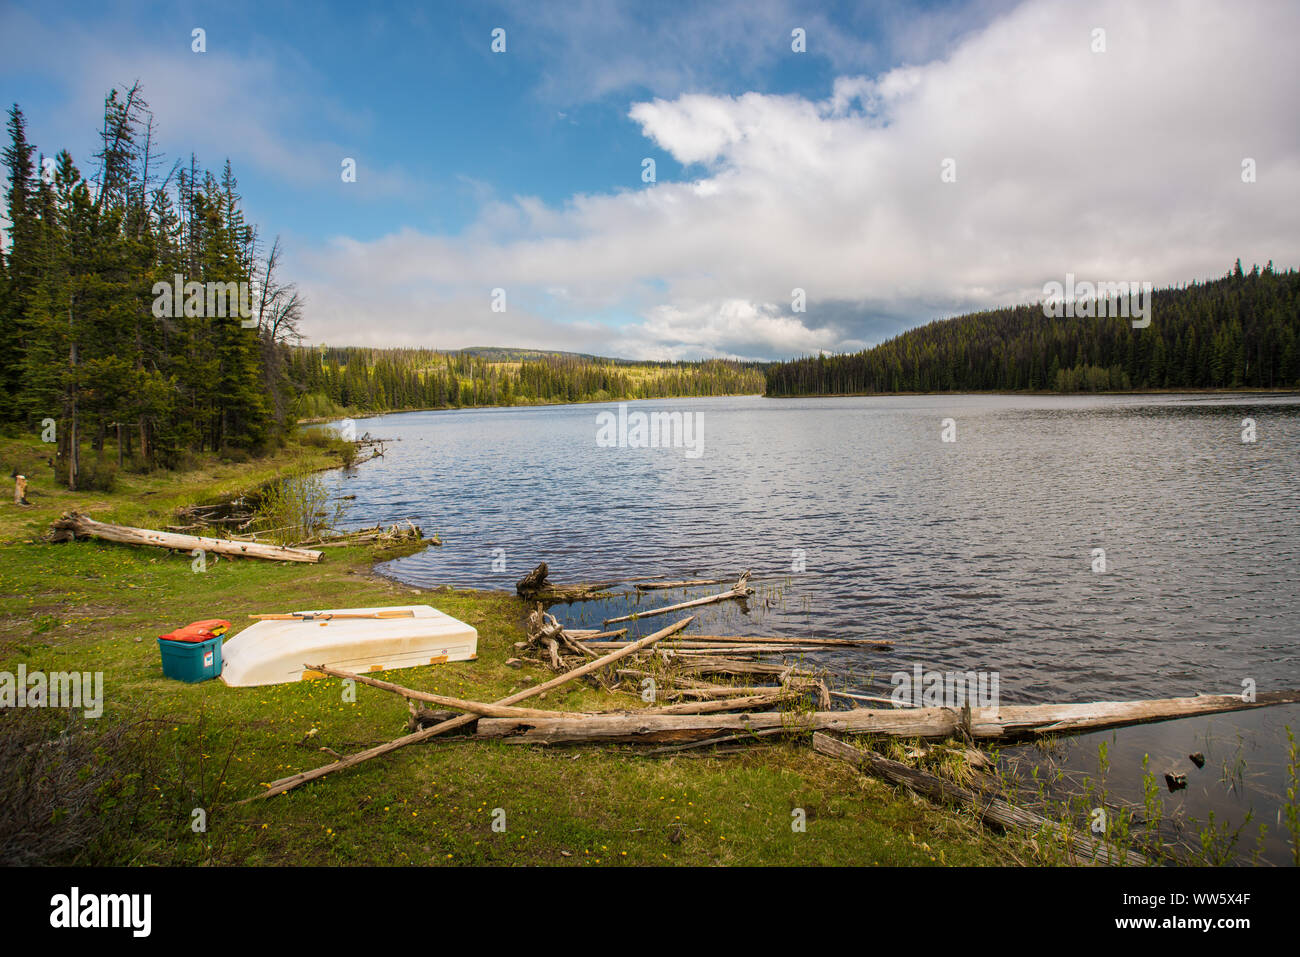 Il lago in nessun luogo con una piccola barca a remi sulla riva, British Columbia, Canada Foto Stock